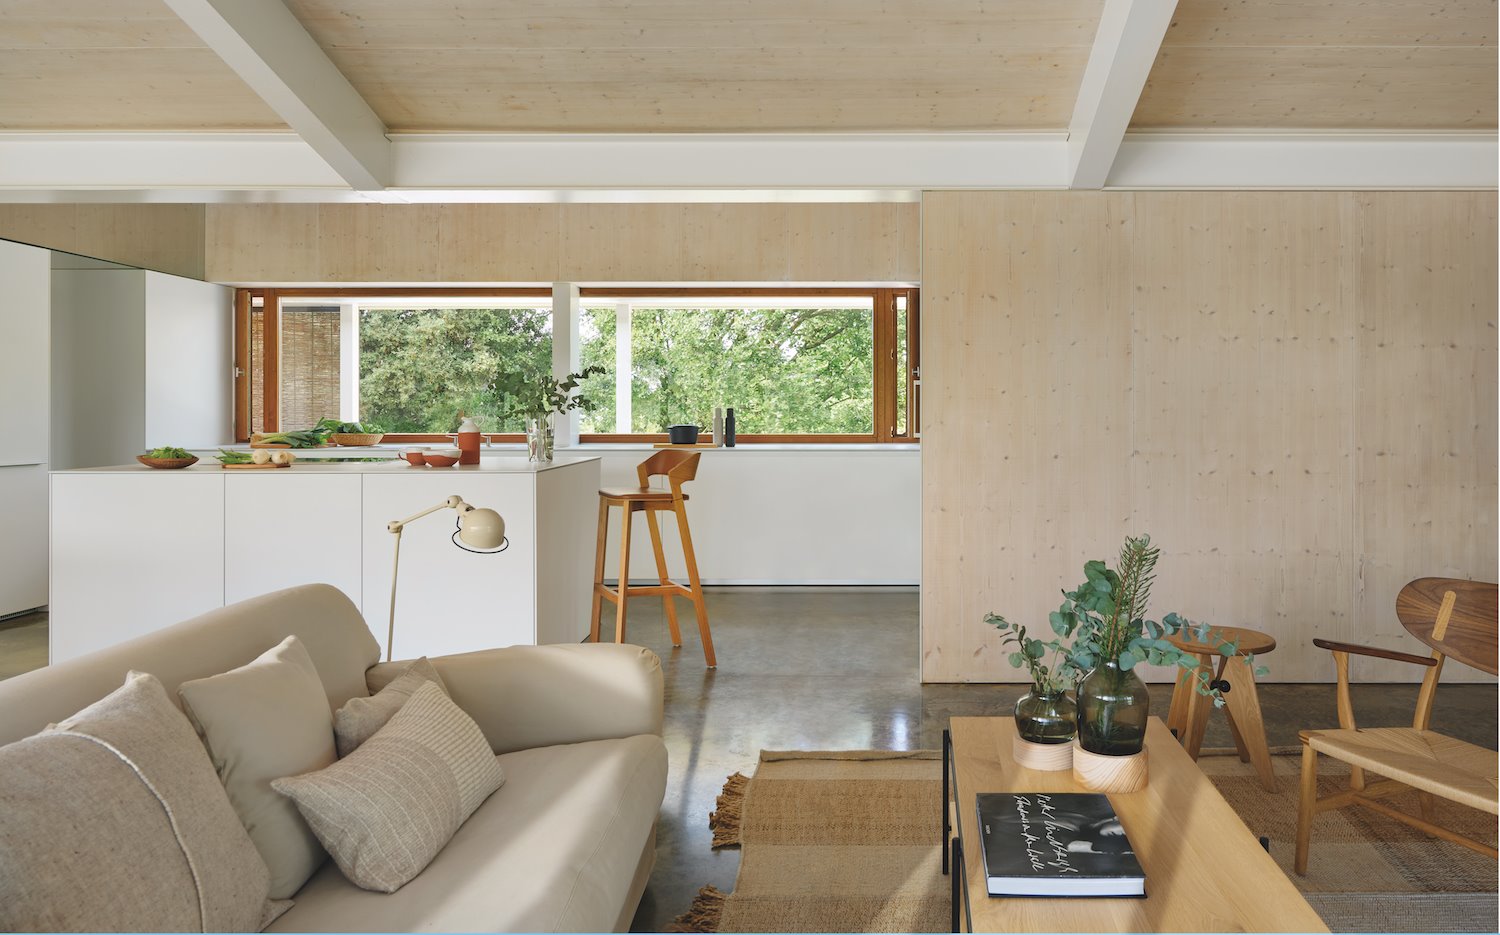 Casa moderna de piedra en camallera con bosques salon